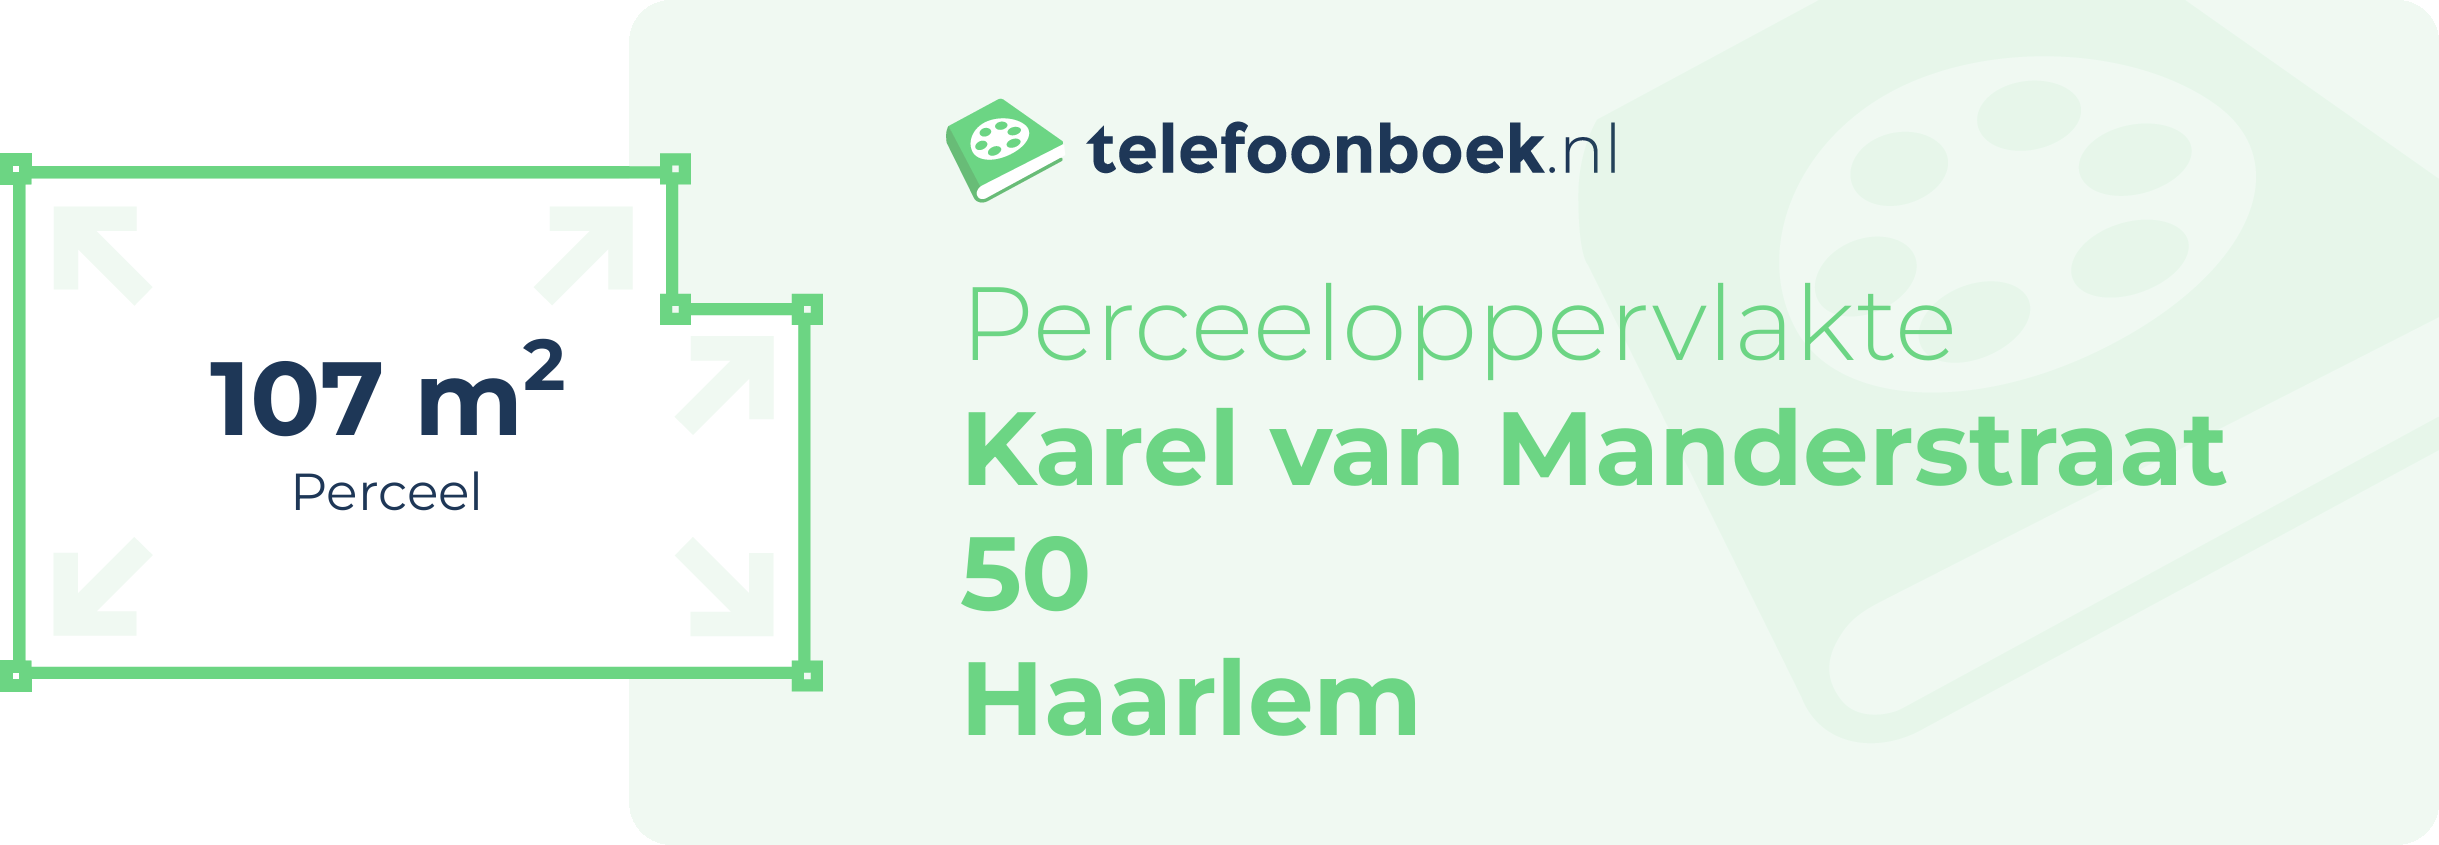 Perceeloppervlakte Karel Van Manderstraat 50 Haarlem